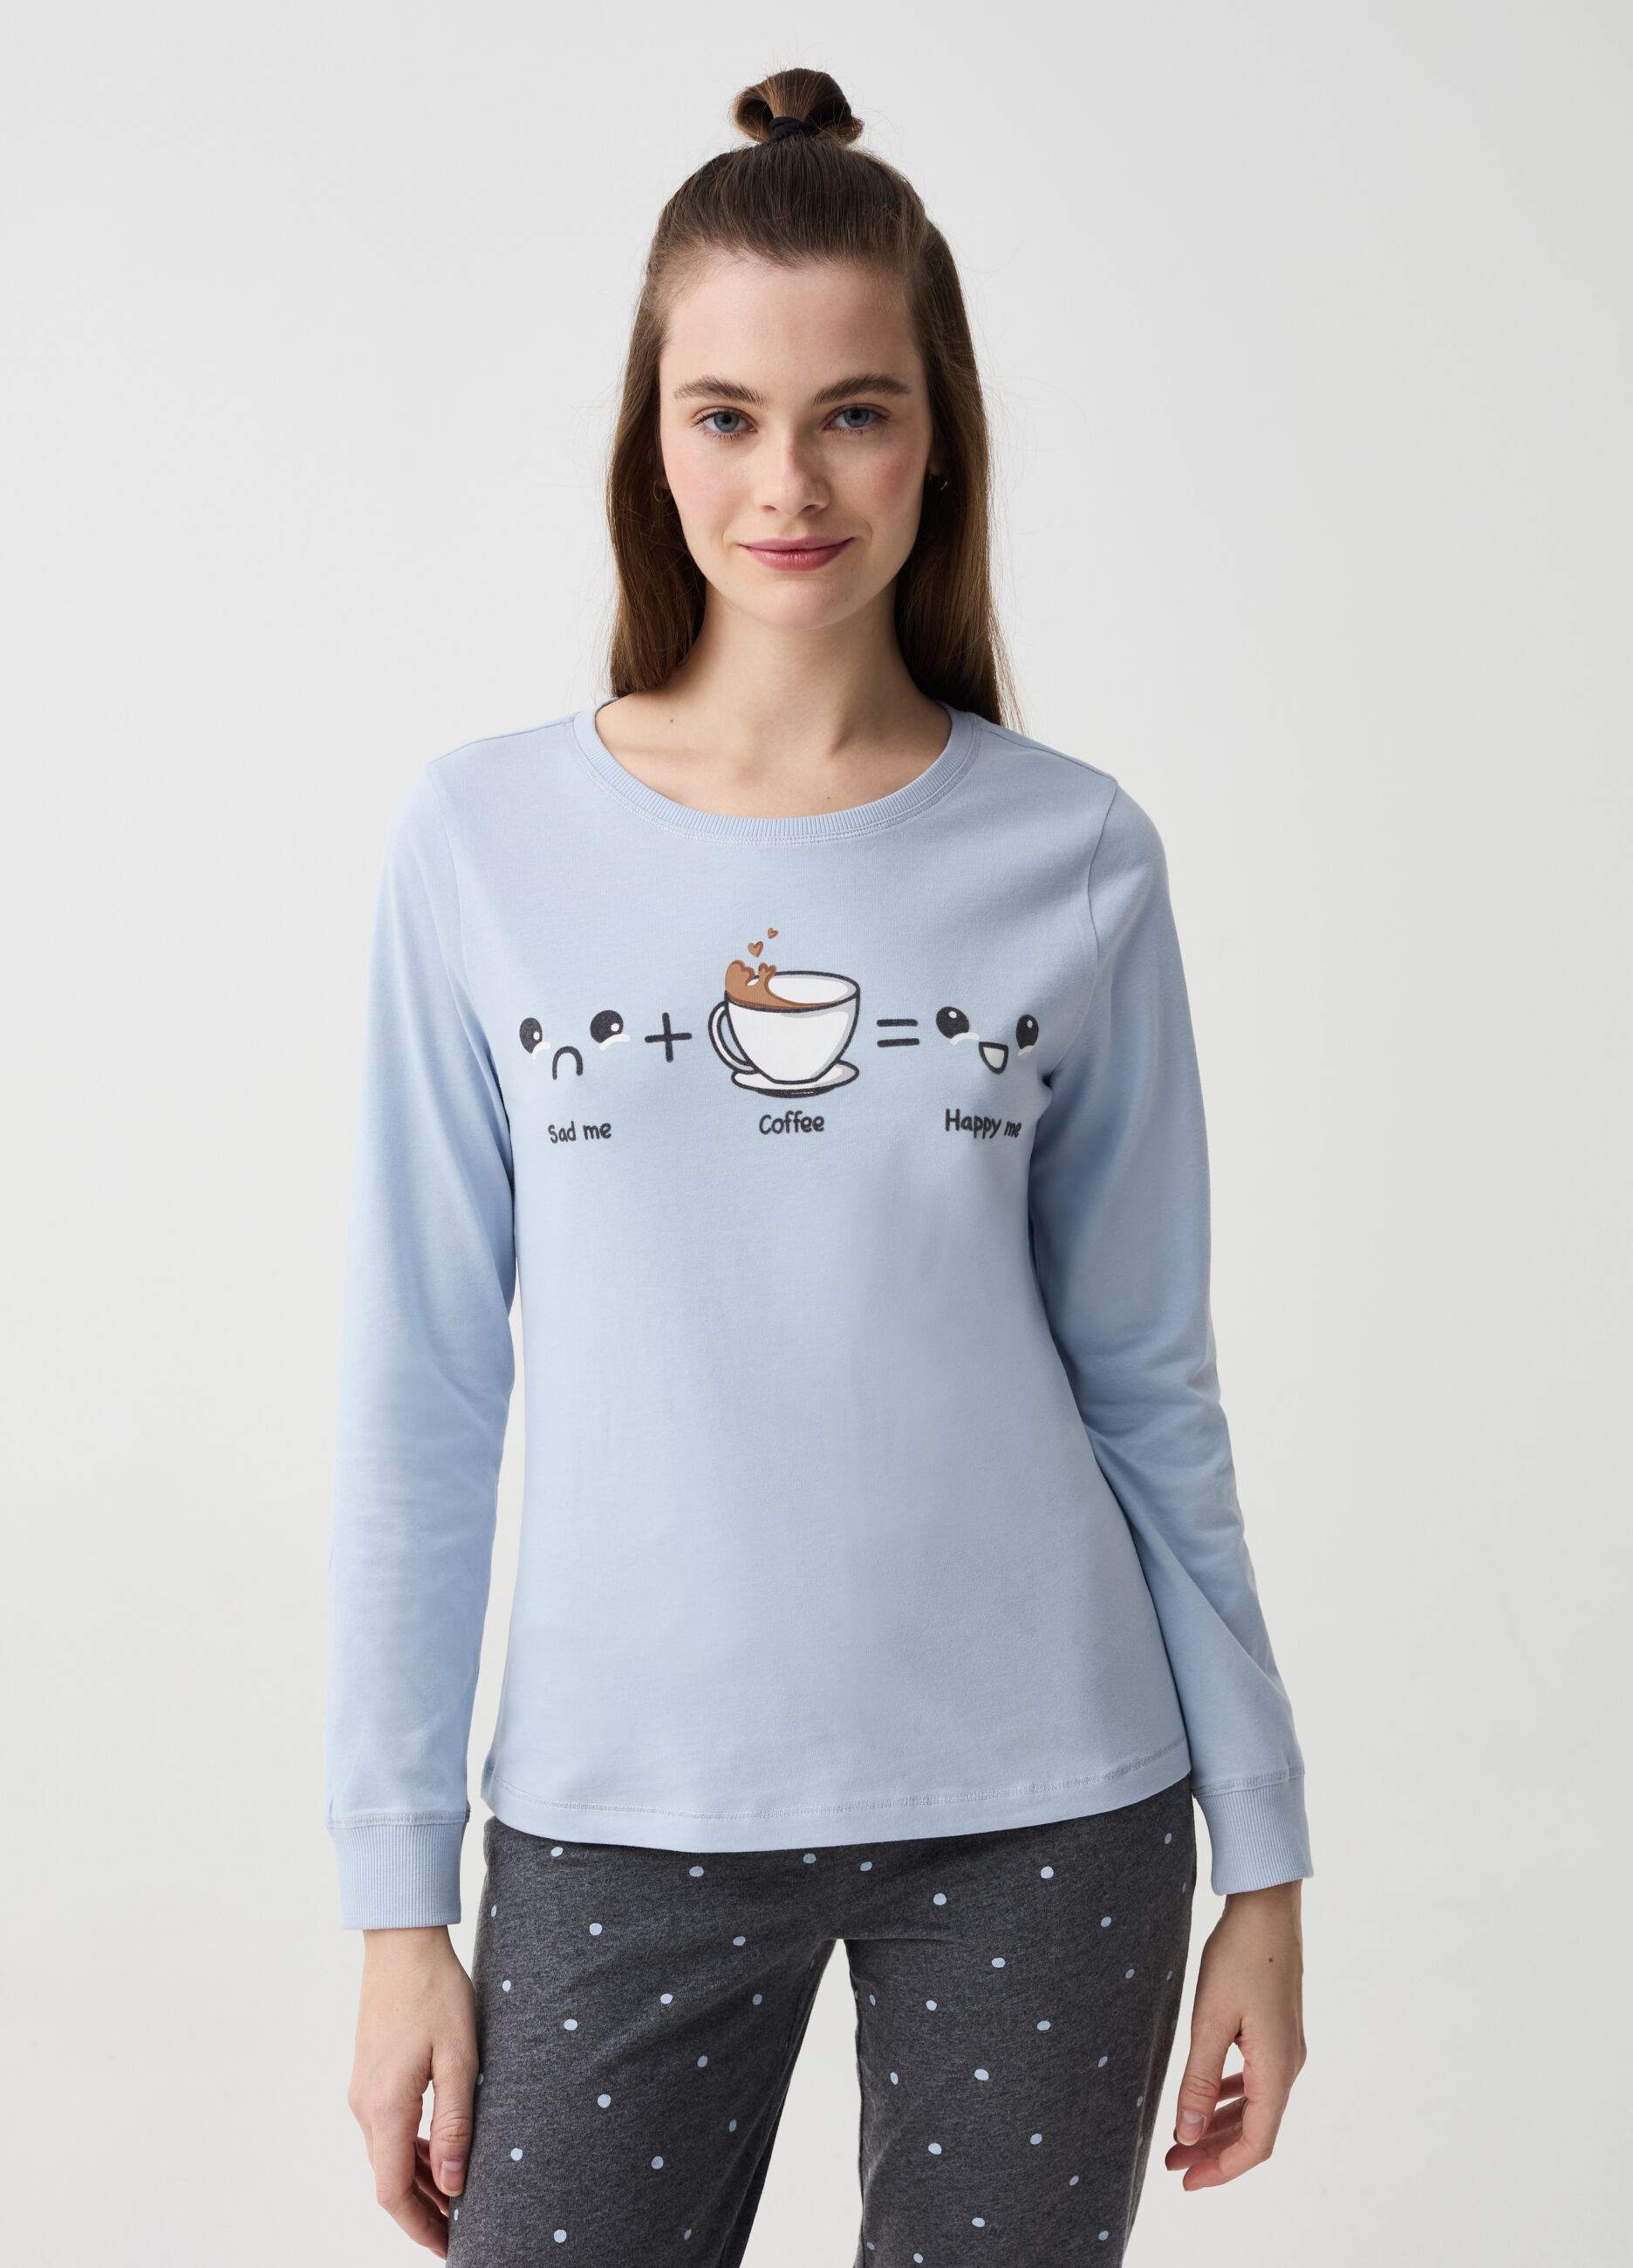 Long polka dot pyjamas with coffee print